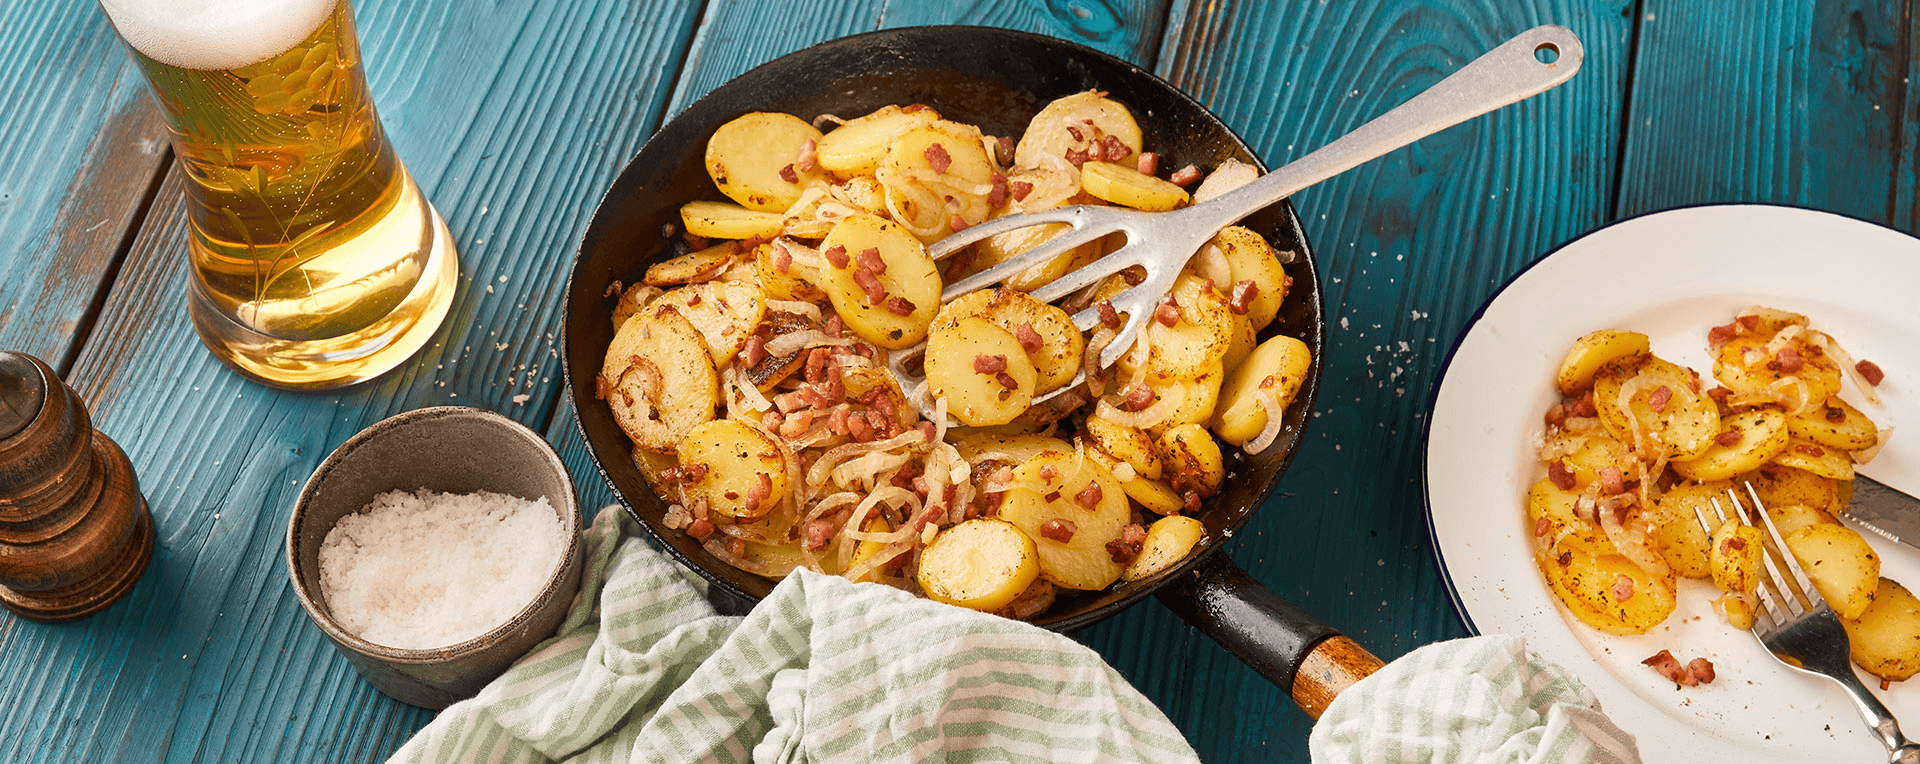 Bratkartoffeln von rohen Kartoffeln Rezept - REWE.de